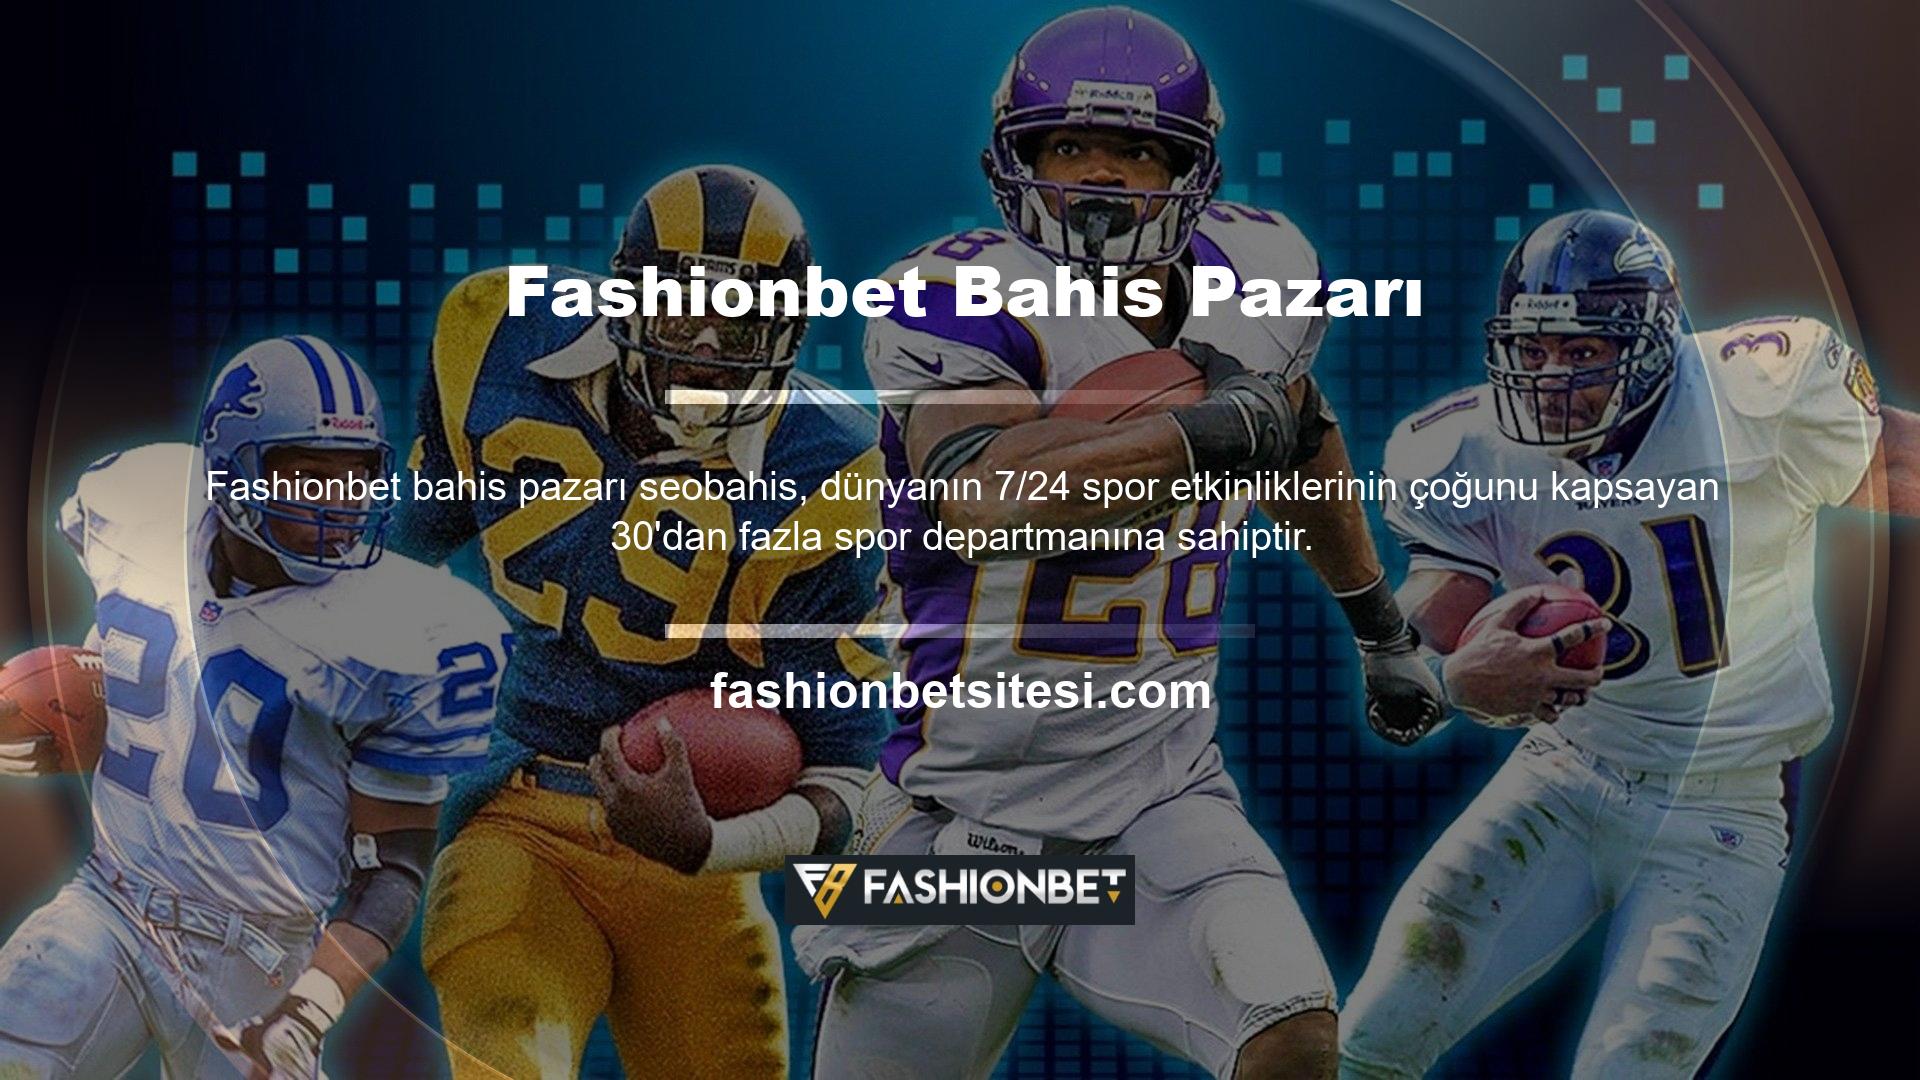 Fashionbet ayrıca sanal oyunlara ve E-spor müsabakalarına bahis yapma imkanı da sunuyor